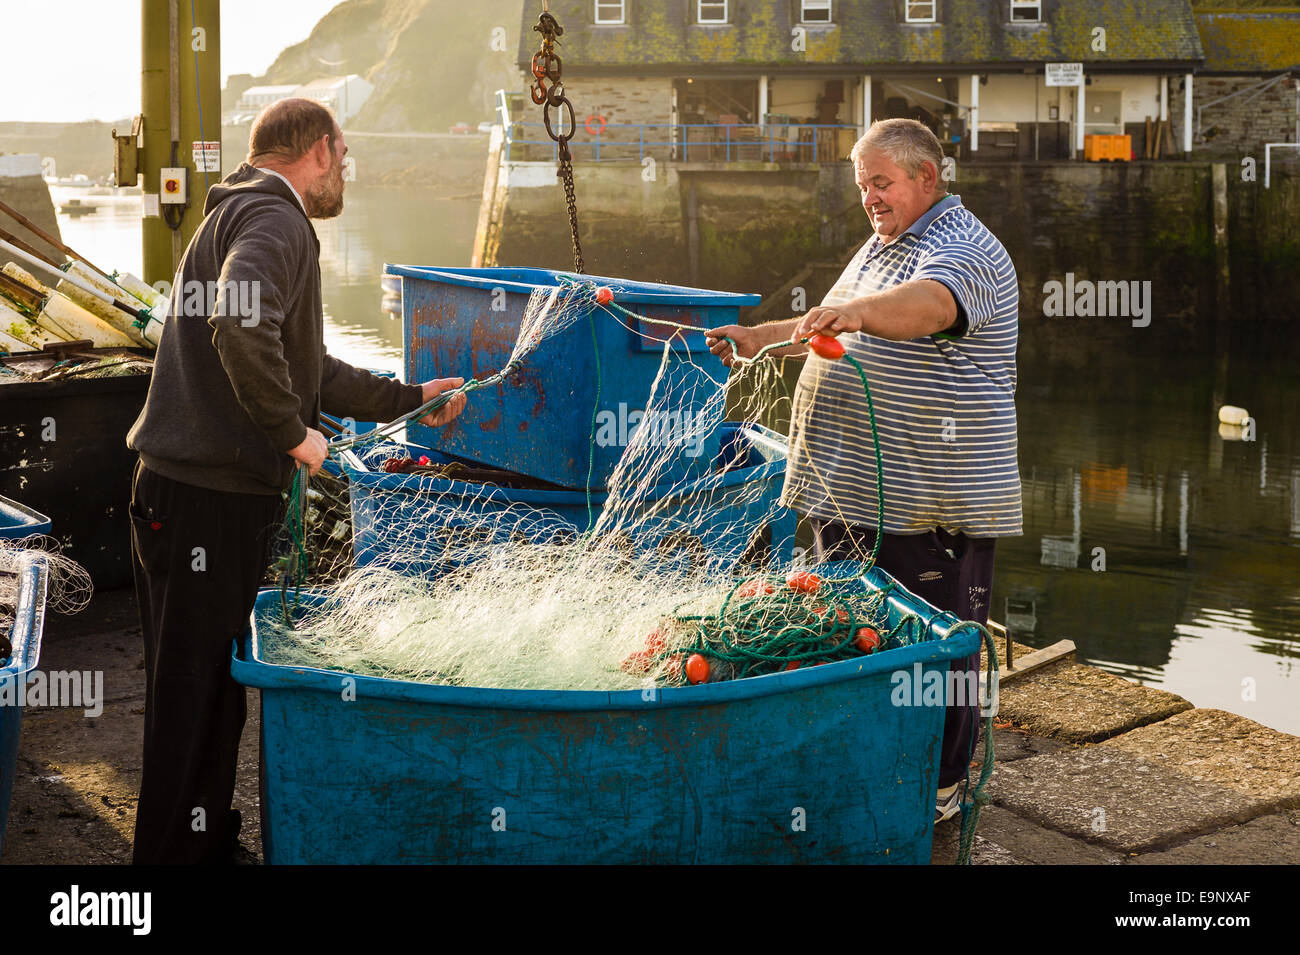 Los pescadores en Mevagissey inspección de redes de pesca antes de zarpar Foto de stock